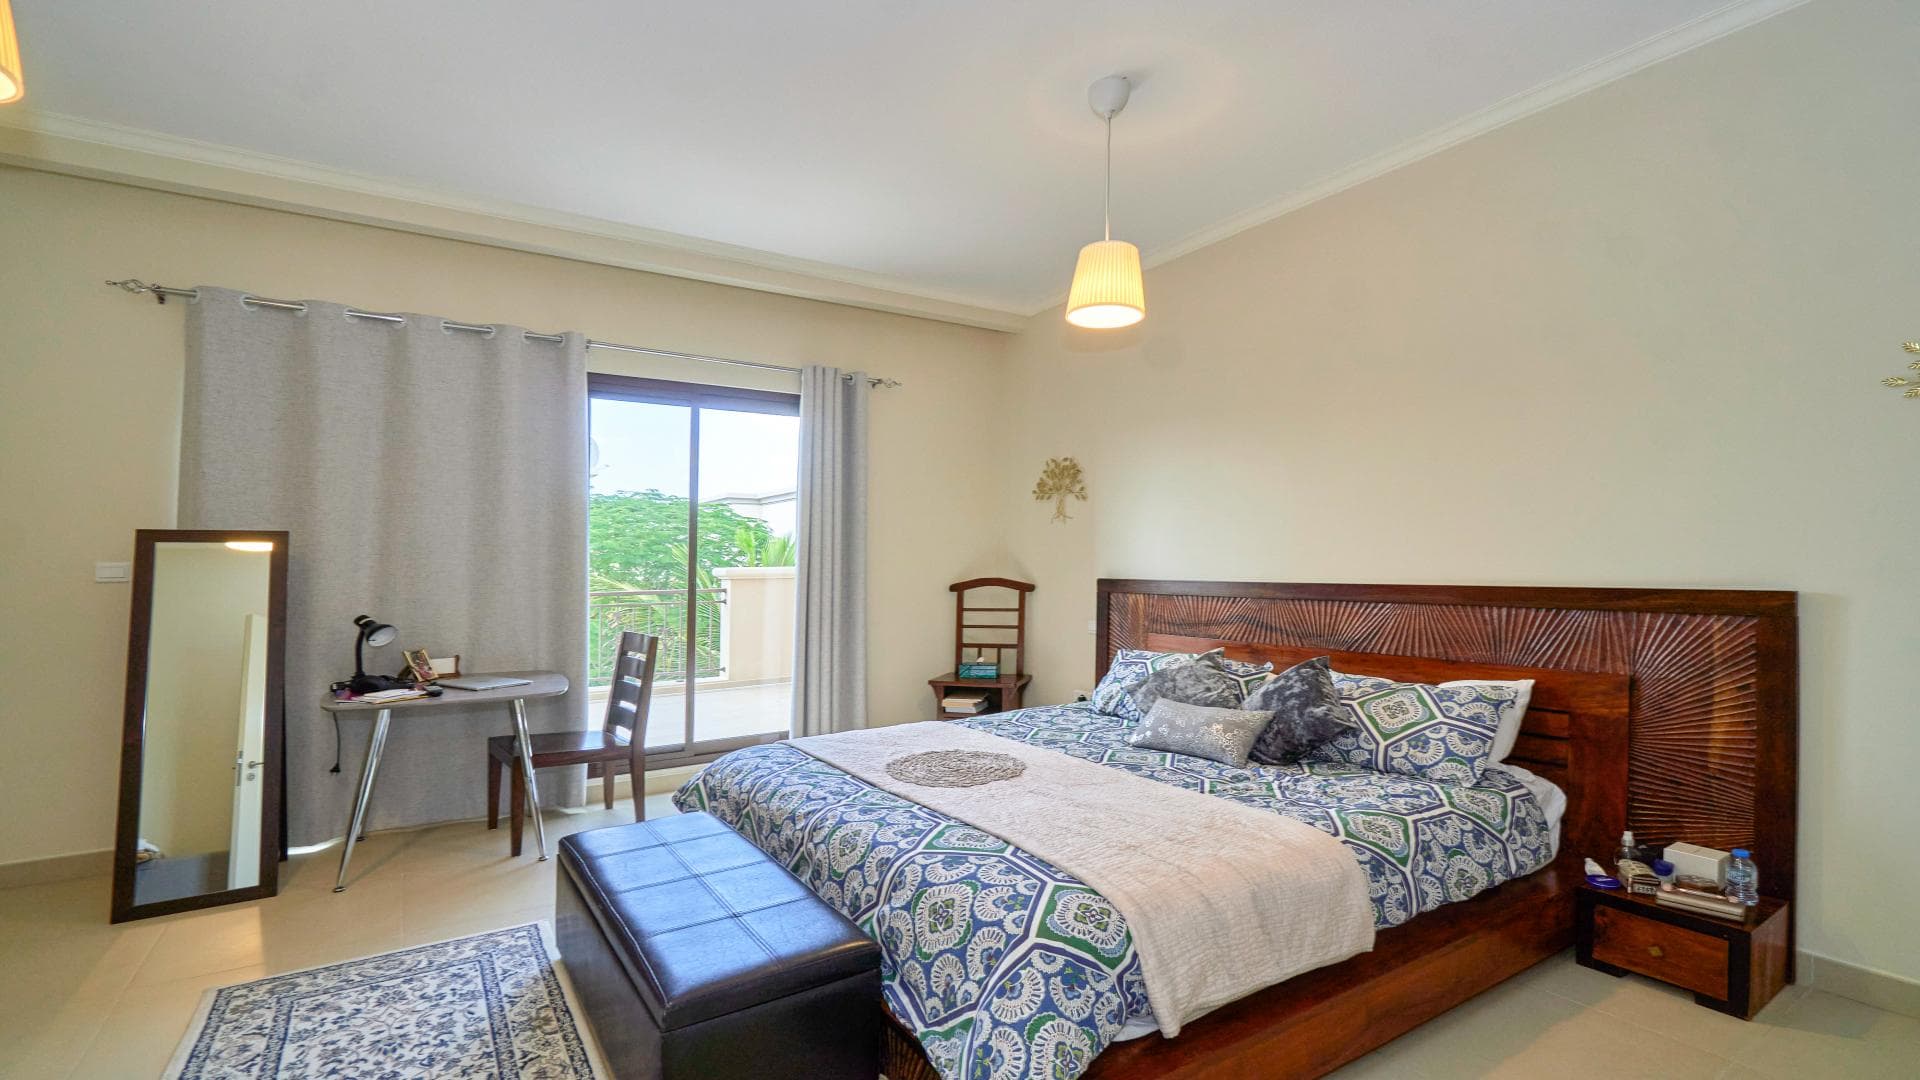 4 Bedroom Villa For Rent Lila Lp13997 16b4d2b5e24f7200.jpg